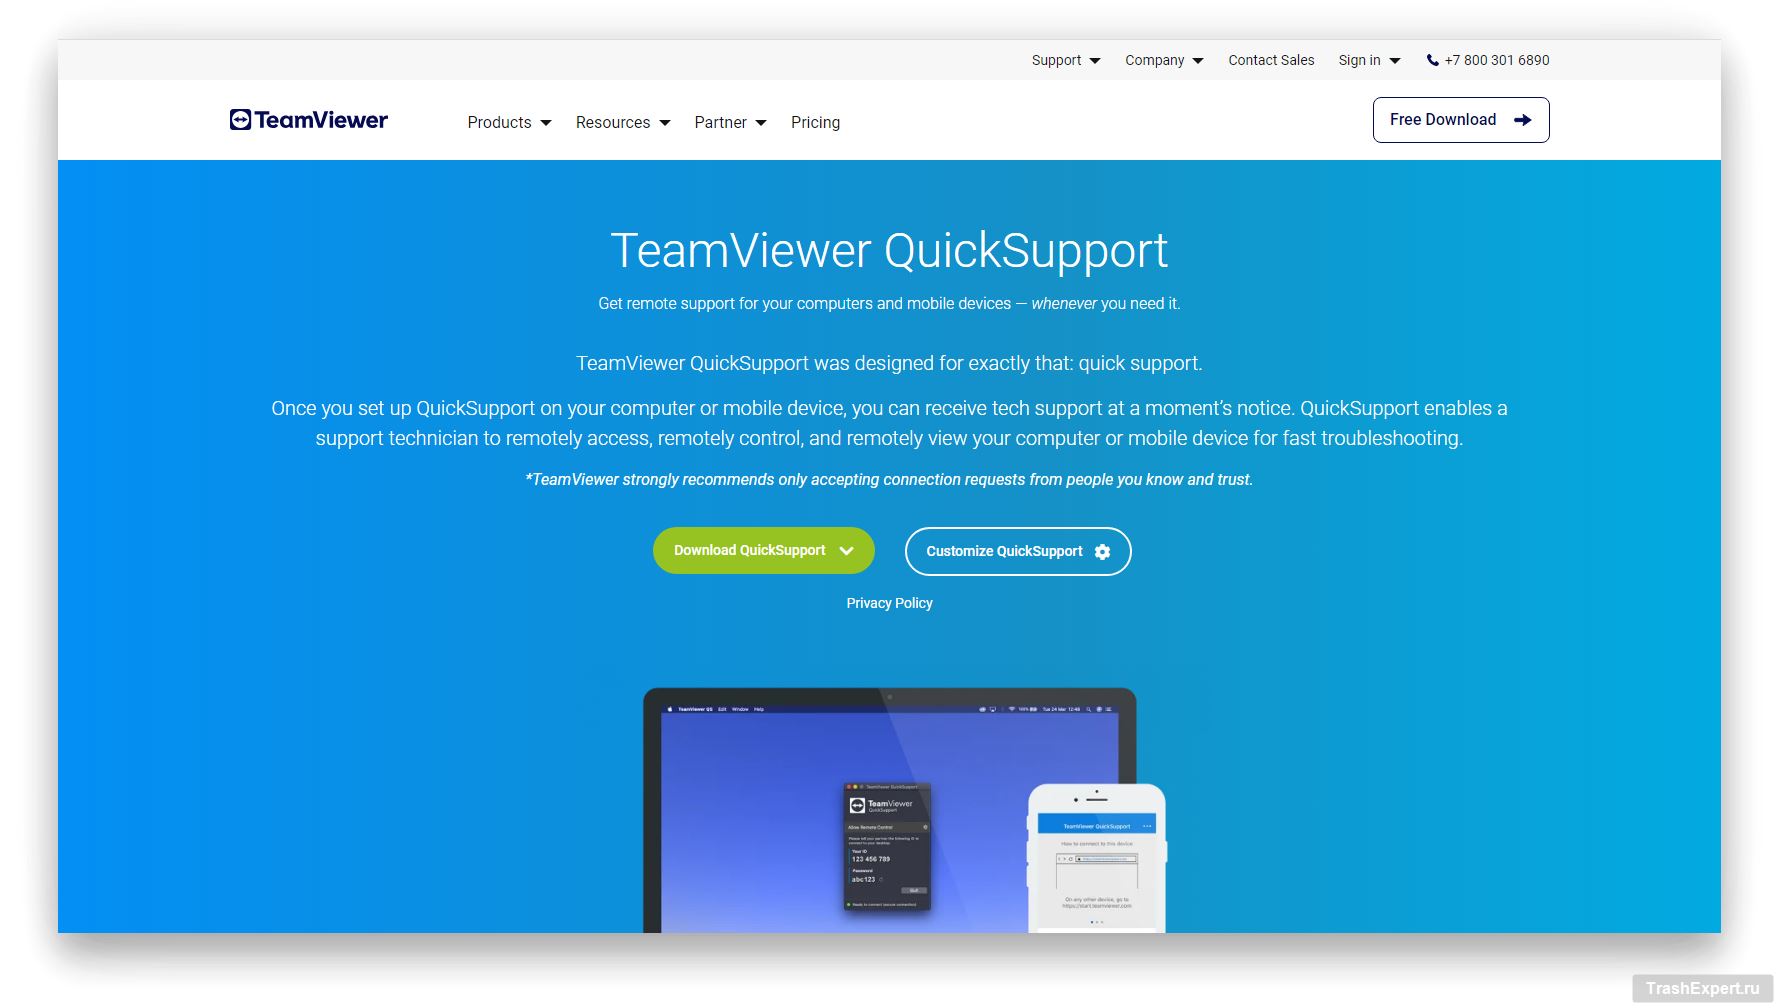 TeamViewer Quicksupport